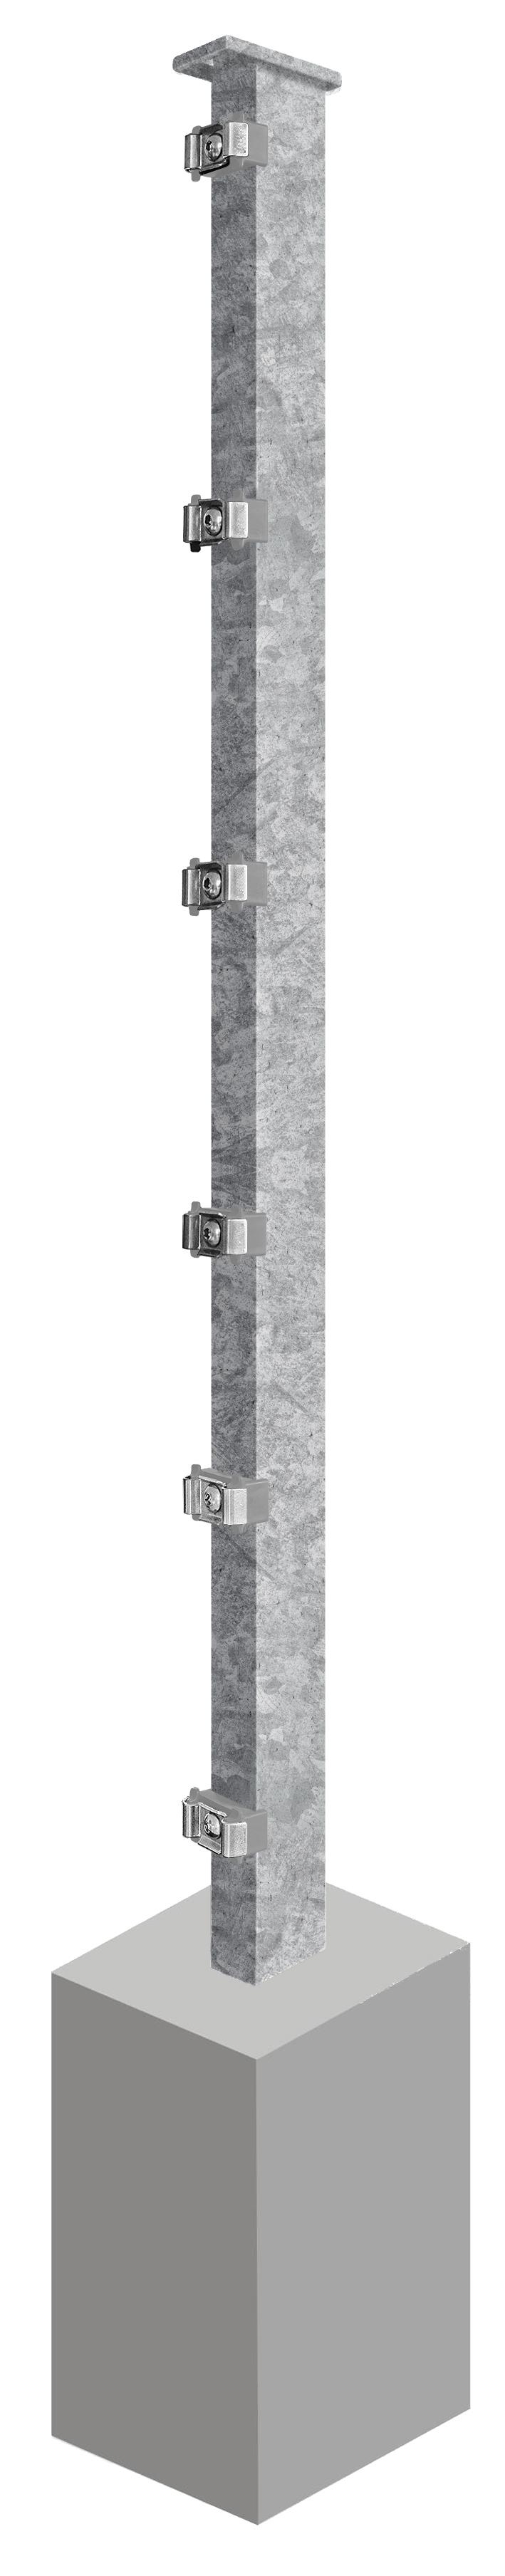 Pfosten System AC-Typ PSLF, für Zaunhöhe 1.030 mm